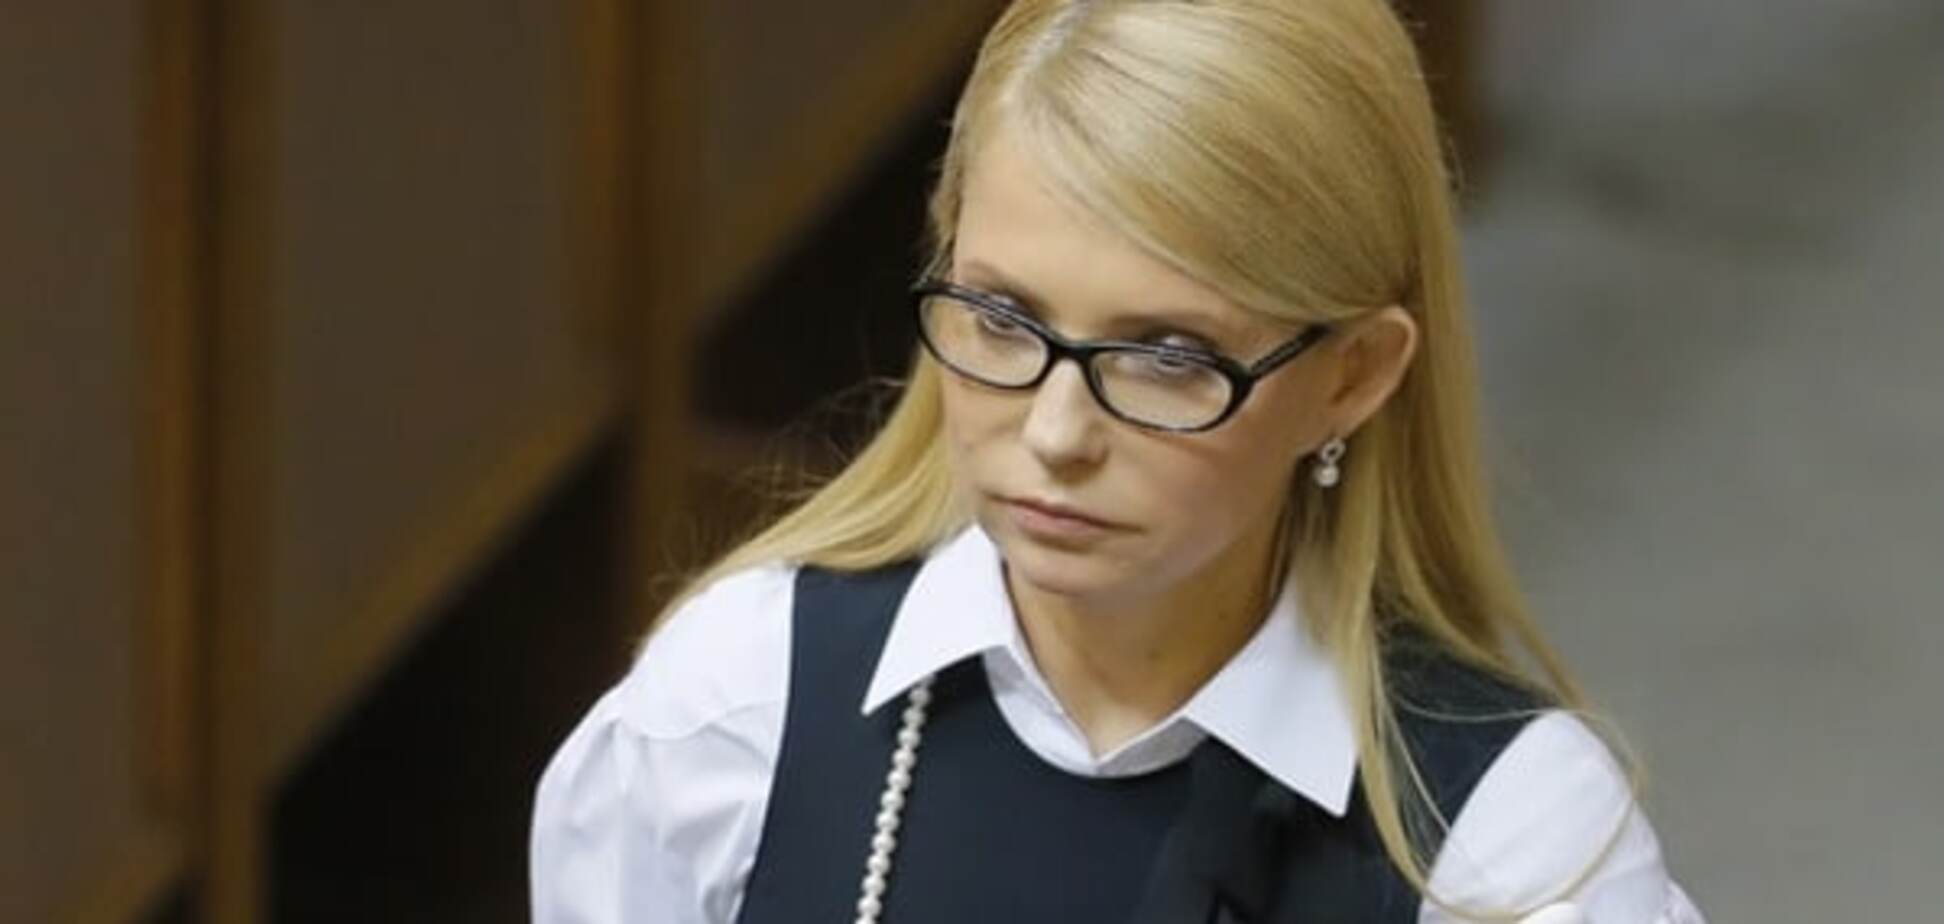 Стенограмма СНБО всплыла, чтобы 'слить' Тимошенко из очереди на премьерство - журналист